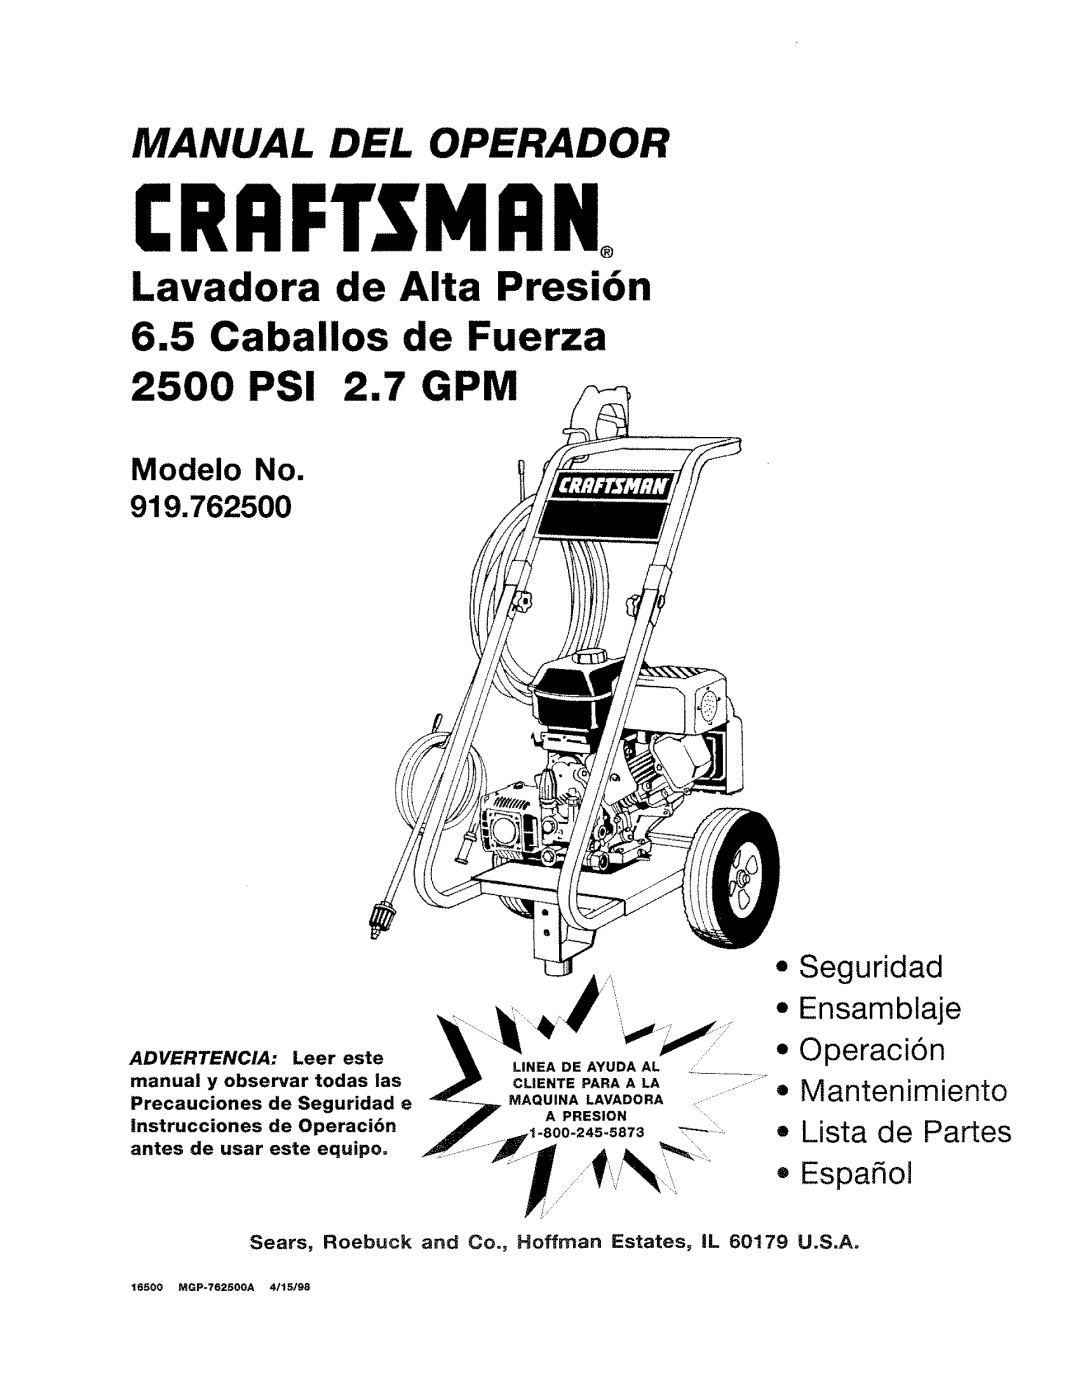 Craftsman 919.762500 manual Lavadora de Alta Presi6n, 6.5Caballos de Fuerza PSI 2.7 GPM, Manual Del, Modelo No, Seguridad 